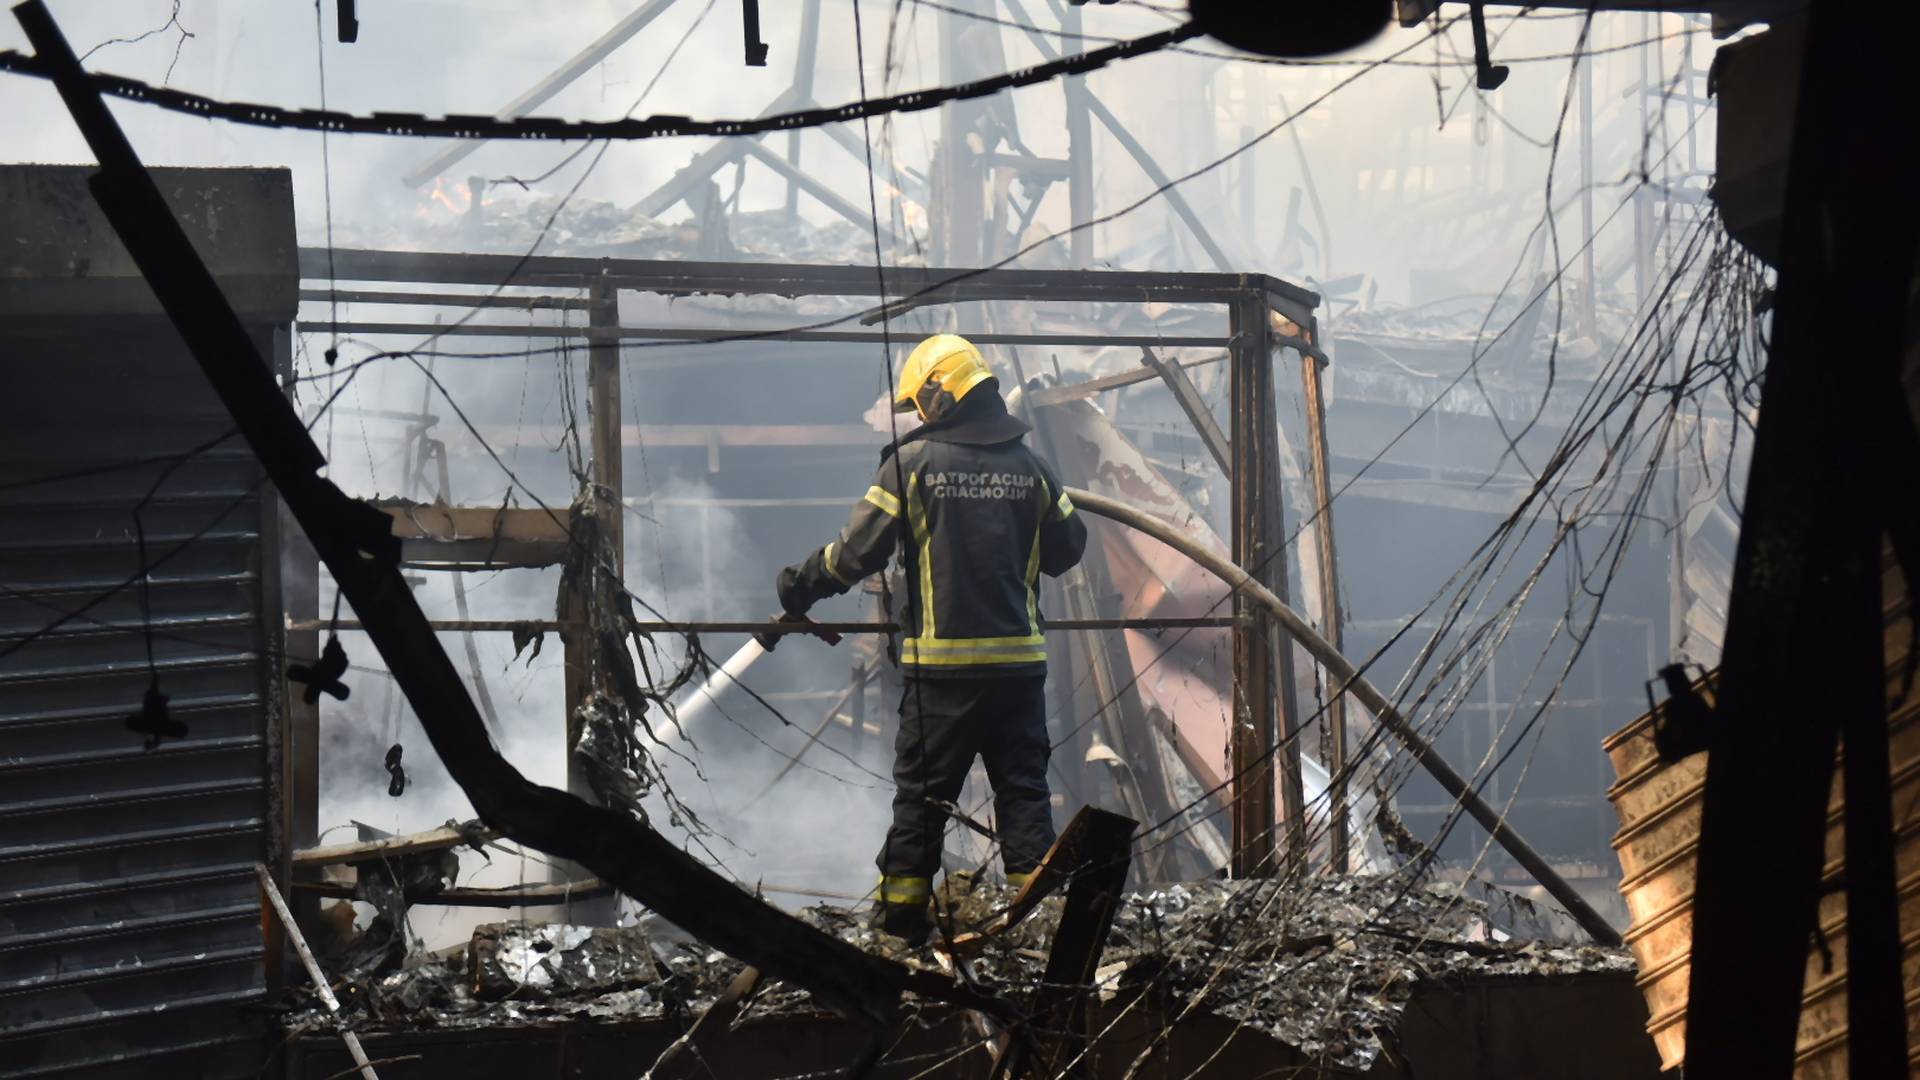 Komentari ispod slike vatrogasca koji su 12 sati gasili požar na Novom Beogradu, najveći su poraz našeg društva